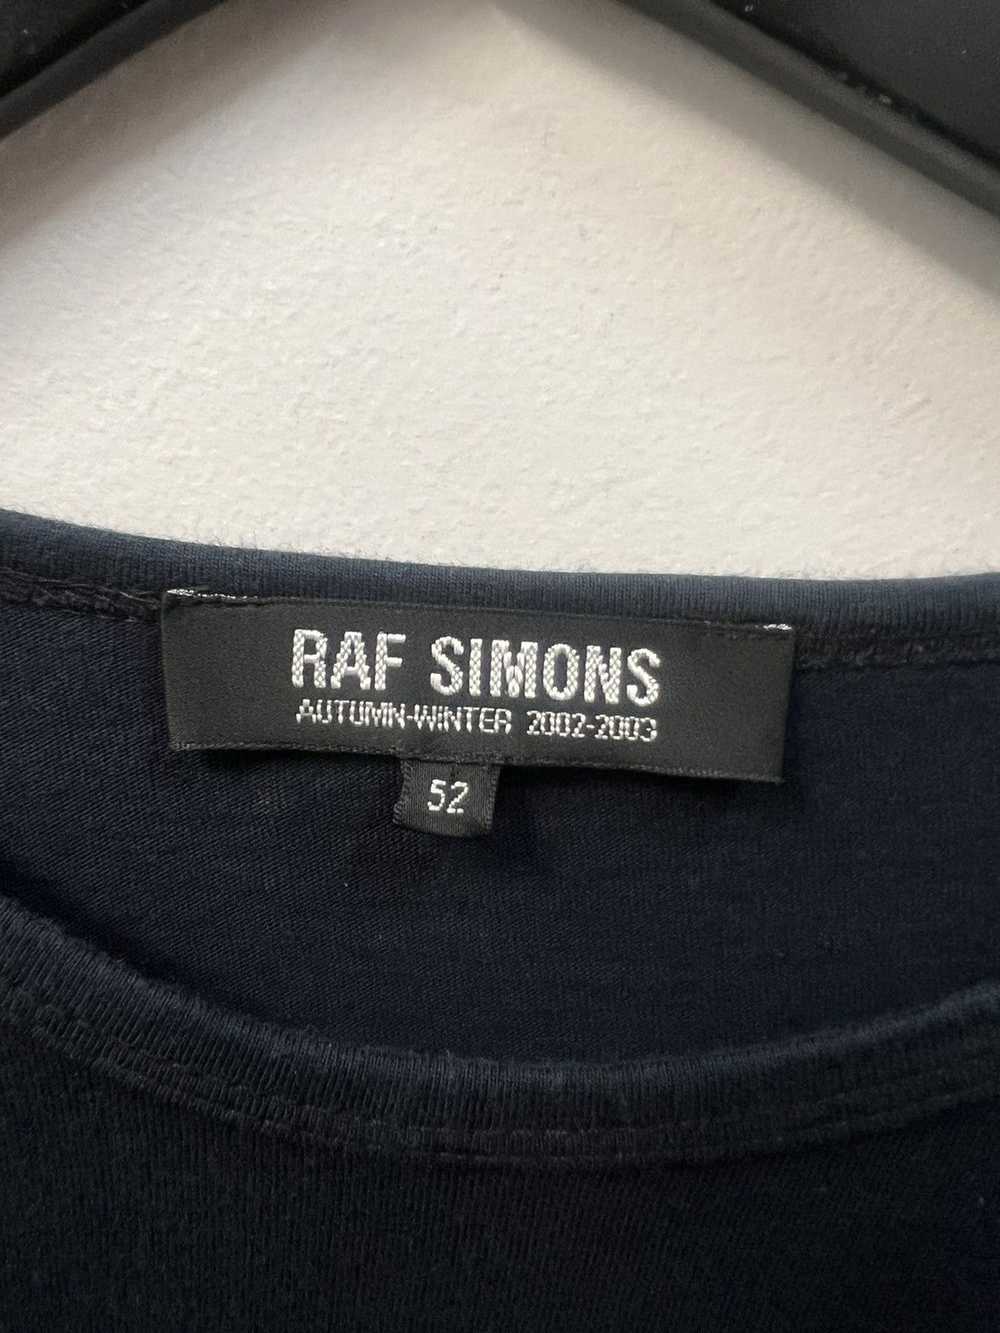 Raf Simons RAF simons virgina creeper long sleeve - image 3